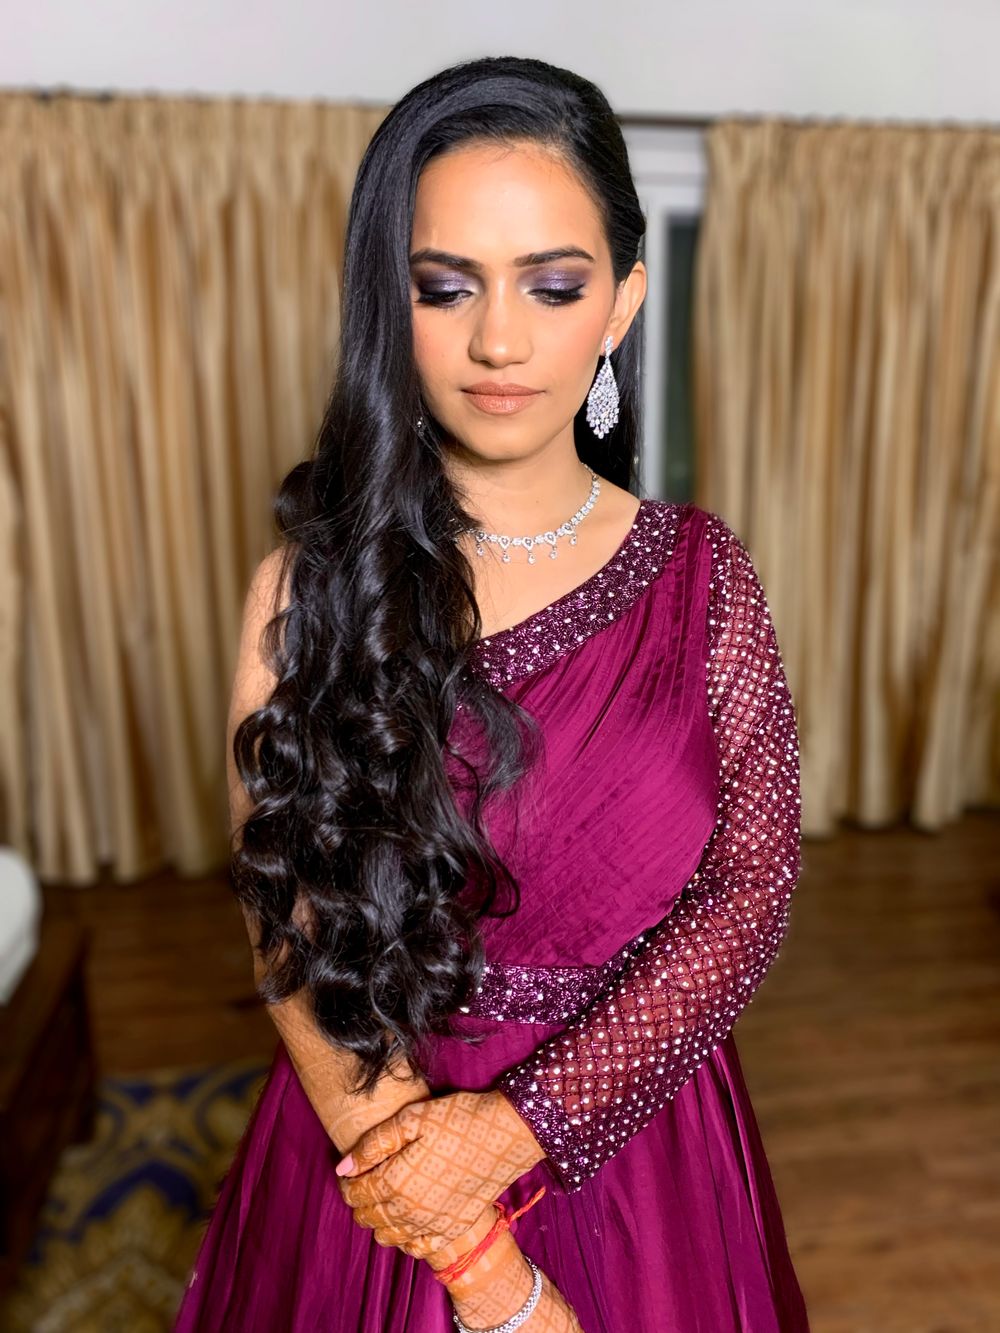 Photo From Snehil Mishra - By Shaivee Verma Hair & Makeup